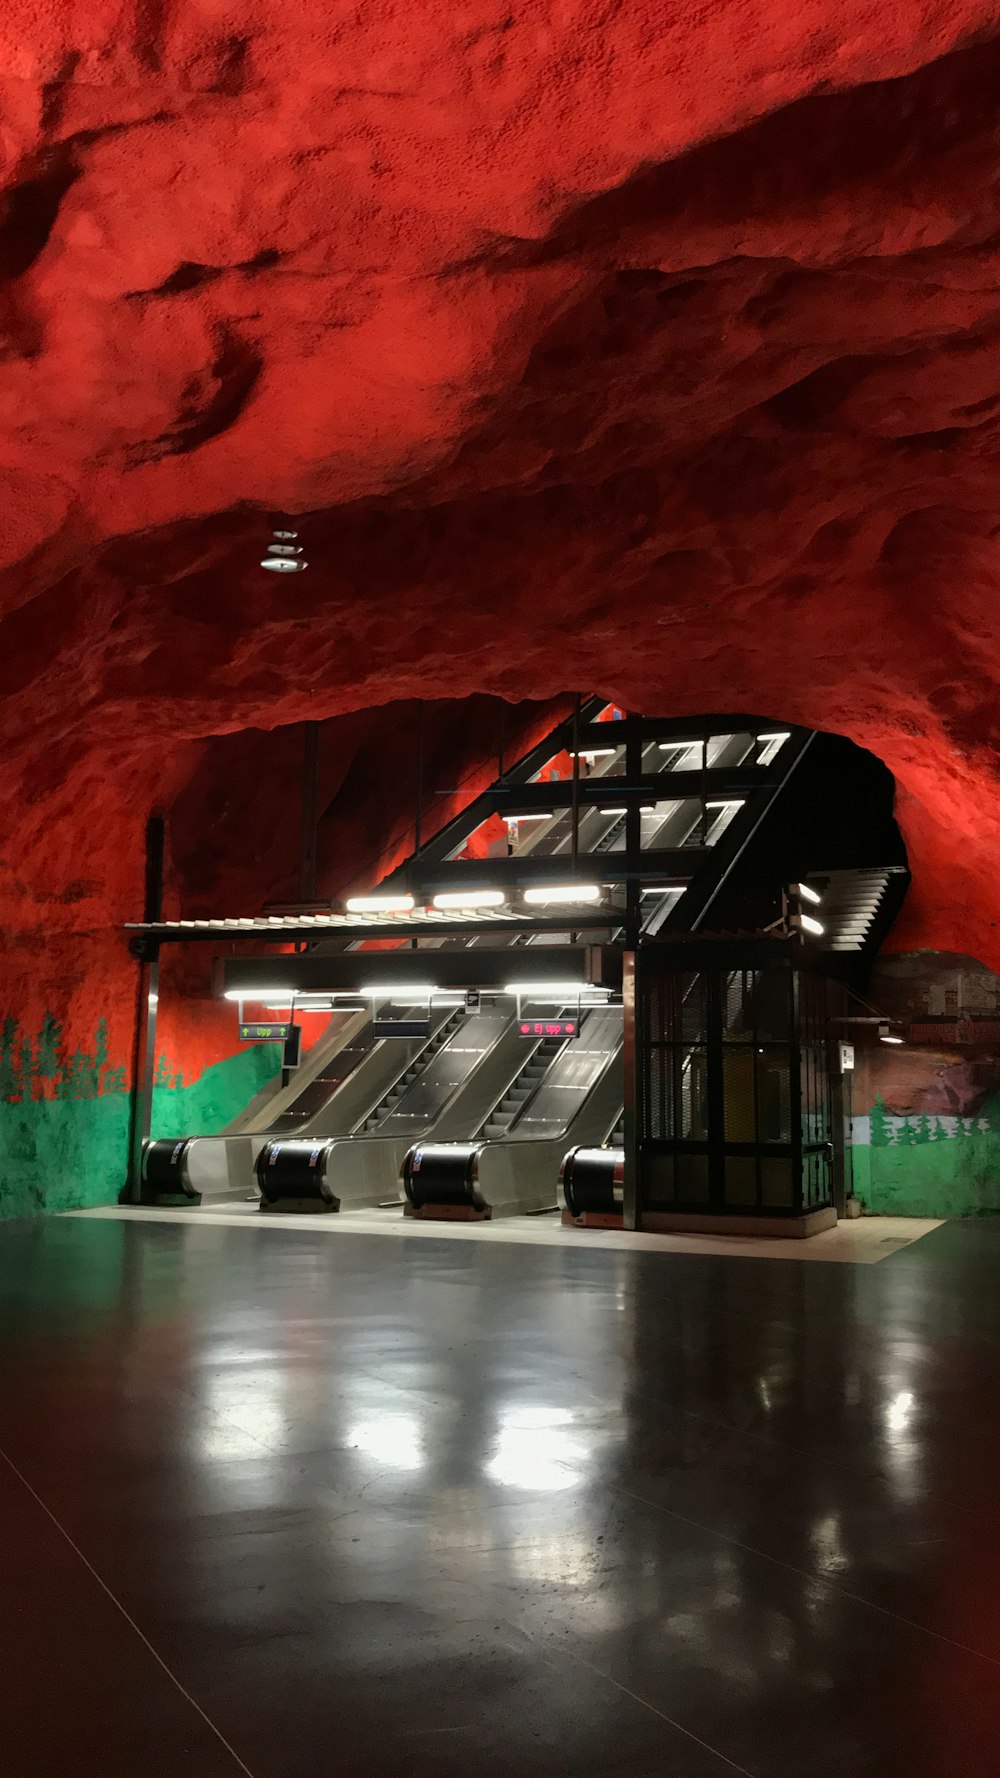 Un túnel rojo y verde con escaleras mecánicas y escaleras